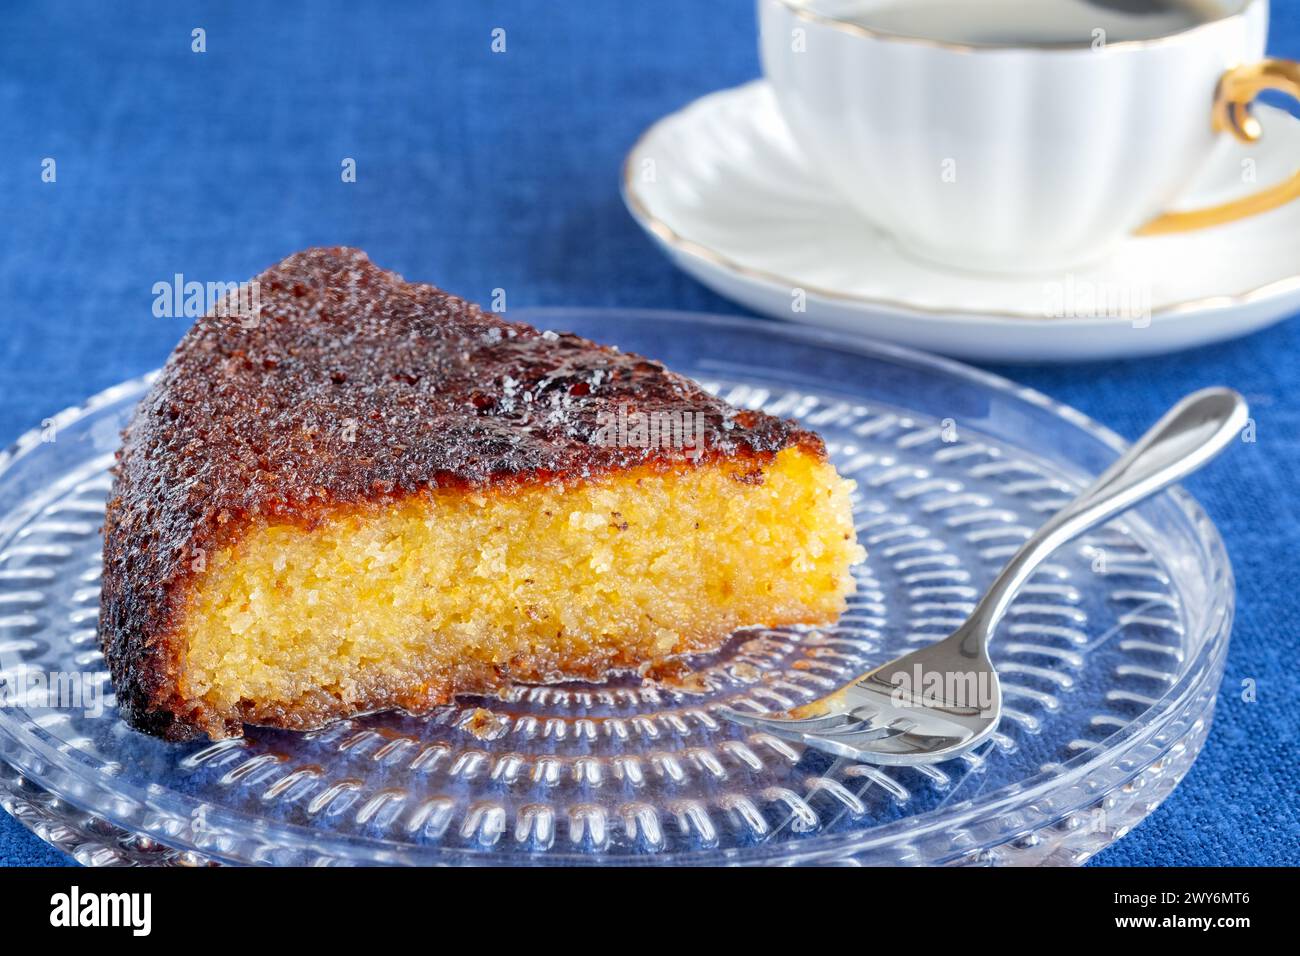 Bristol, Großbritannien. Eine einteilige Portion eines Mandelzitruskuchen, serviert auf einem Teller mit einer heißen Tasse Kaffee auf einem Tisch, der mit einer blauen Tischdecke bedeckt ist Stockfoto